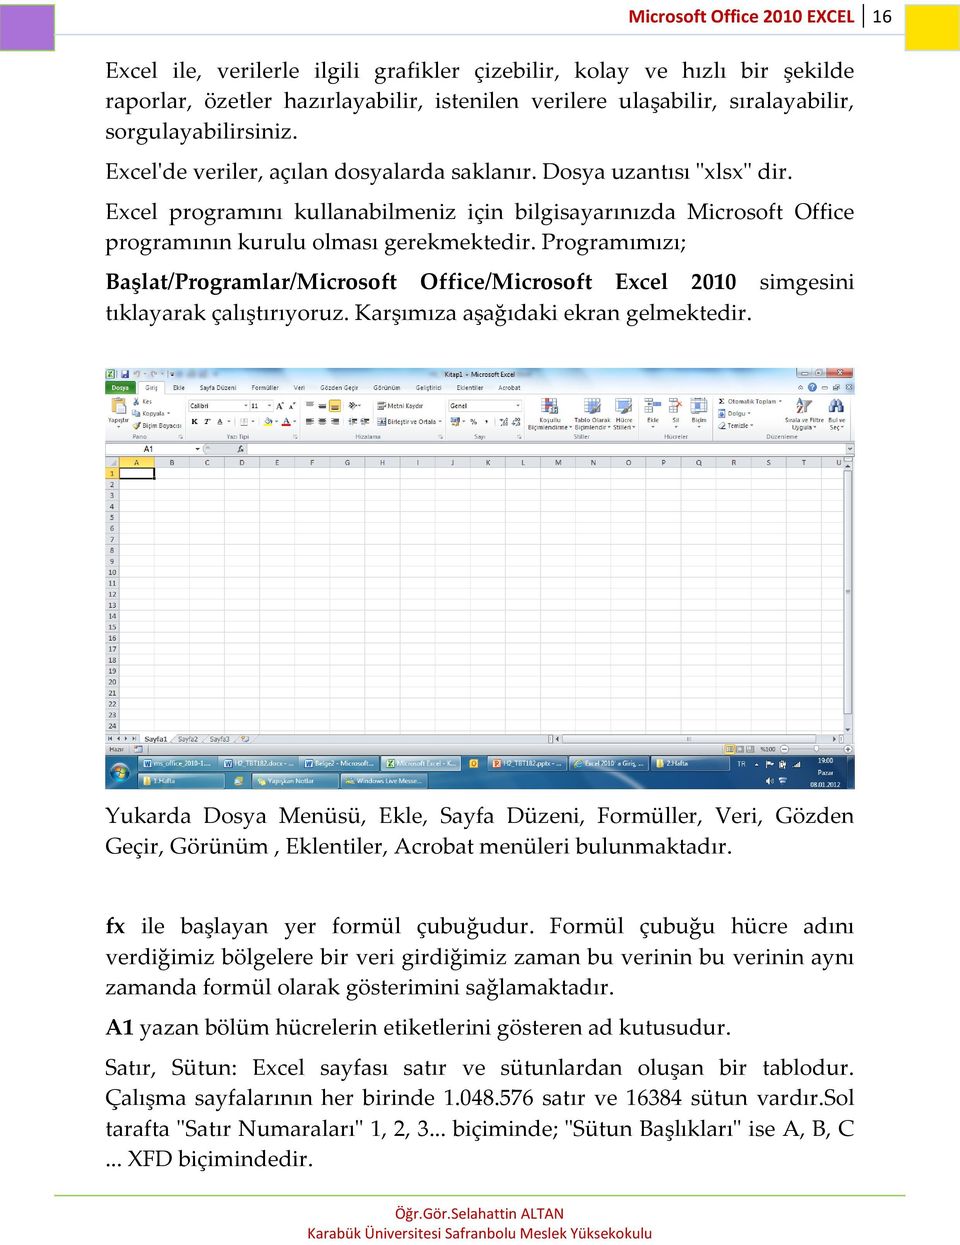 Excel programını kullanabilmeniz için bilgisayarınızda Microsoft Office programının kurulu olması gerekmektedir.